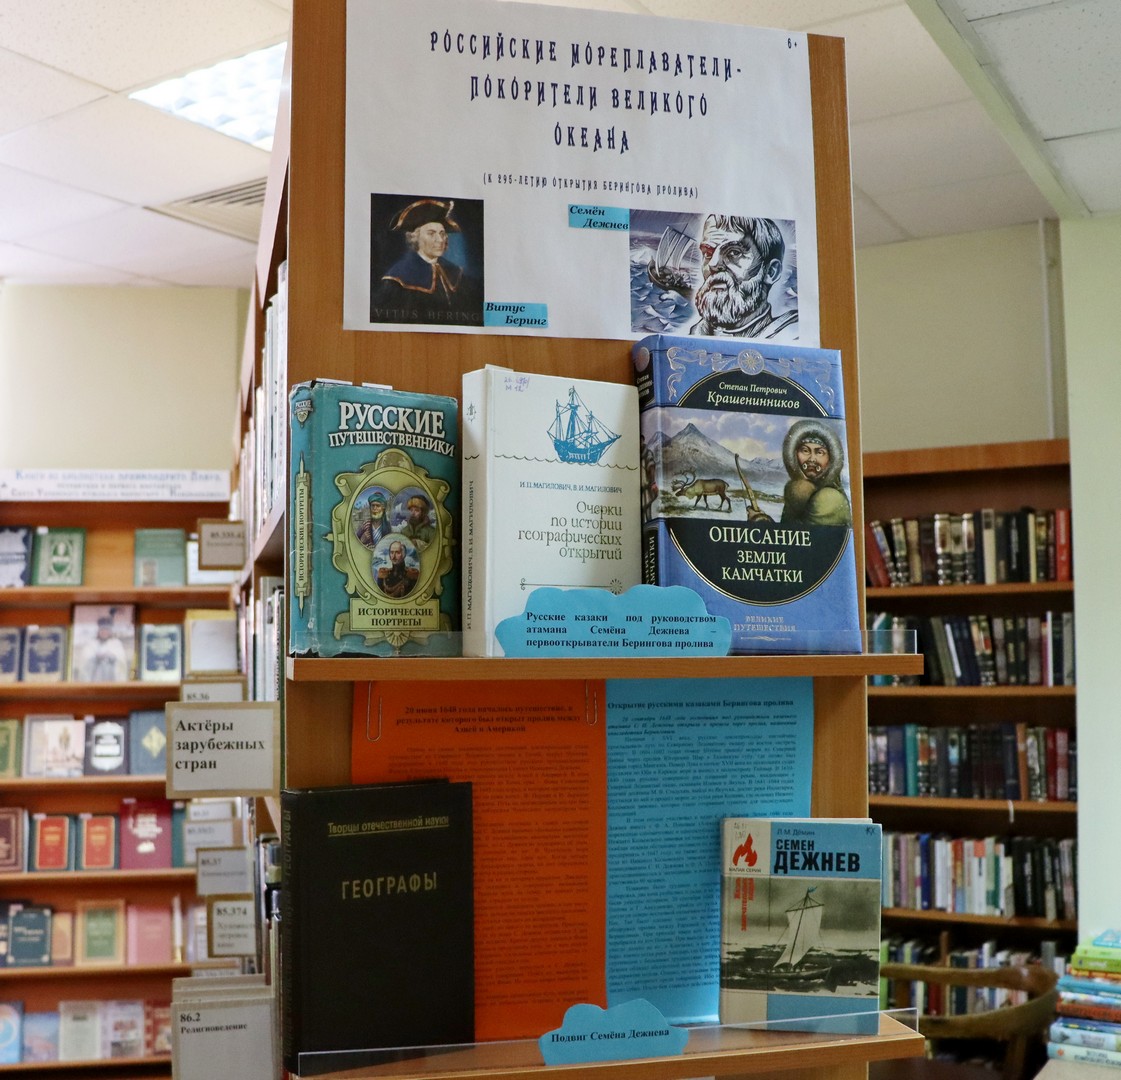 Книжная выставка «Российские мореплаватели - покорители великого океана» (6+)